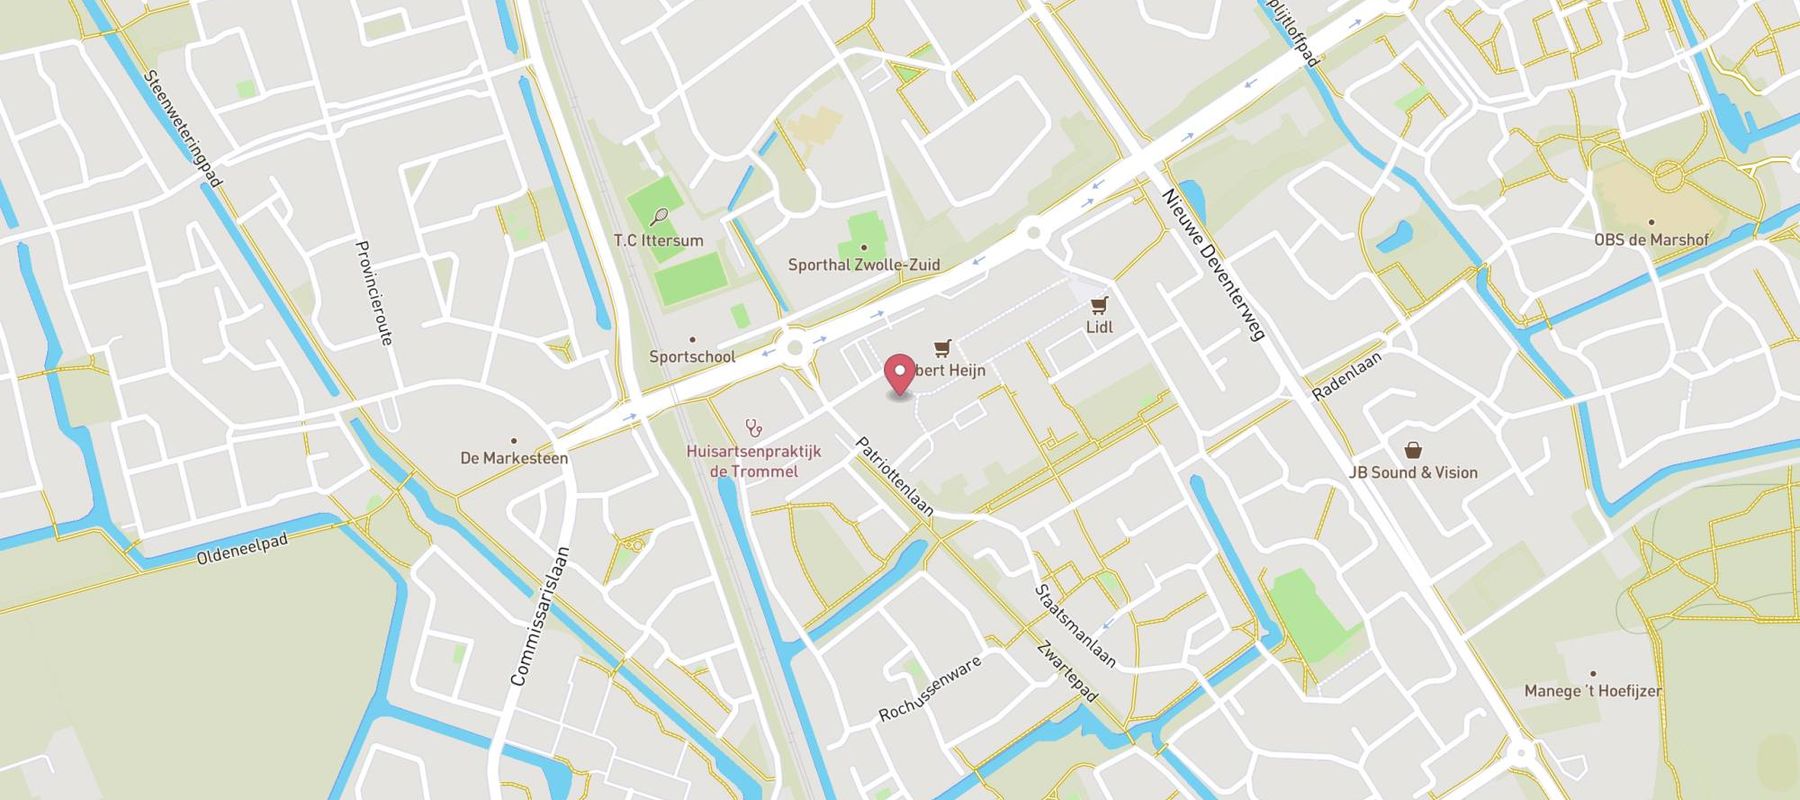 Blokker Zwolle Van der Capellenstraat map